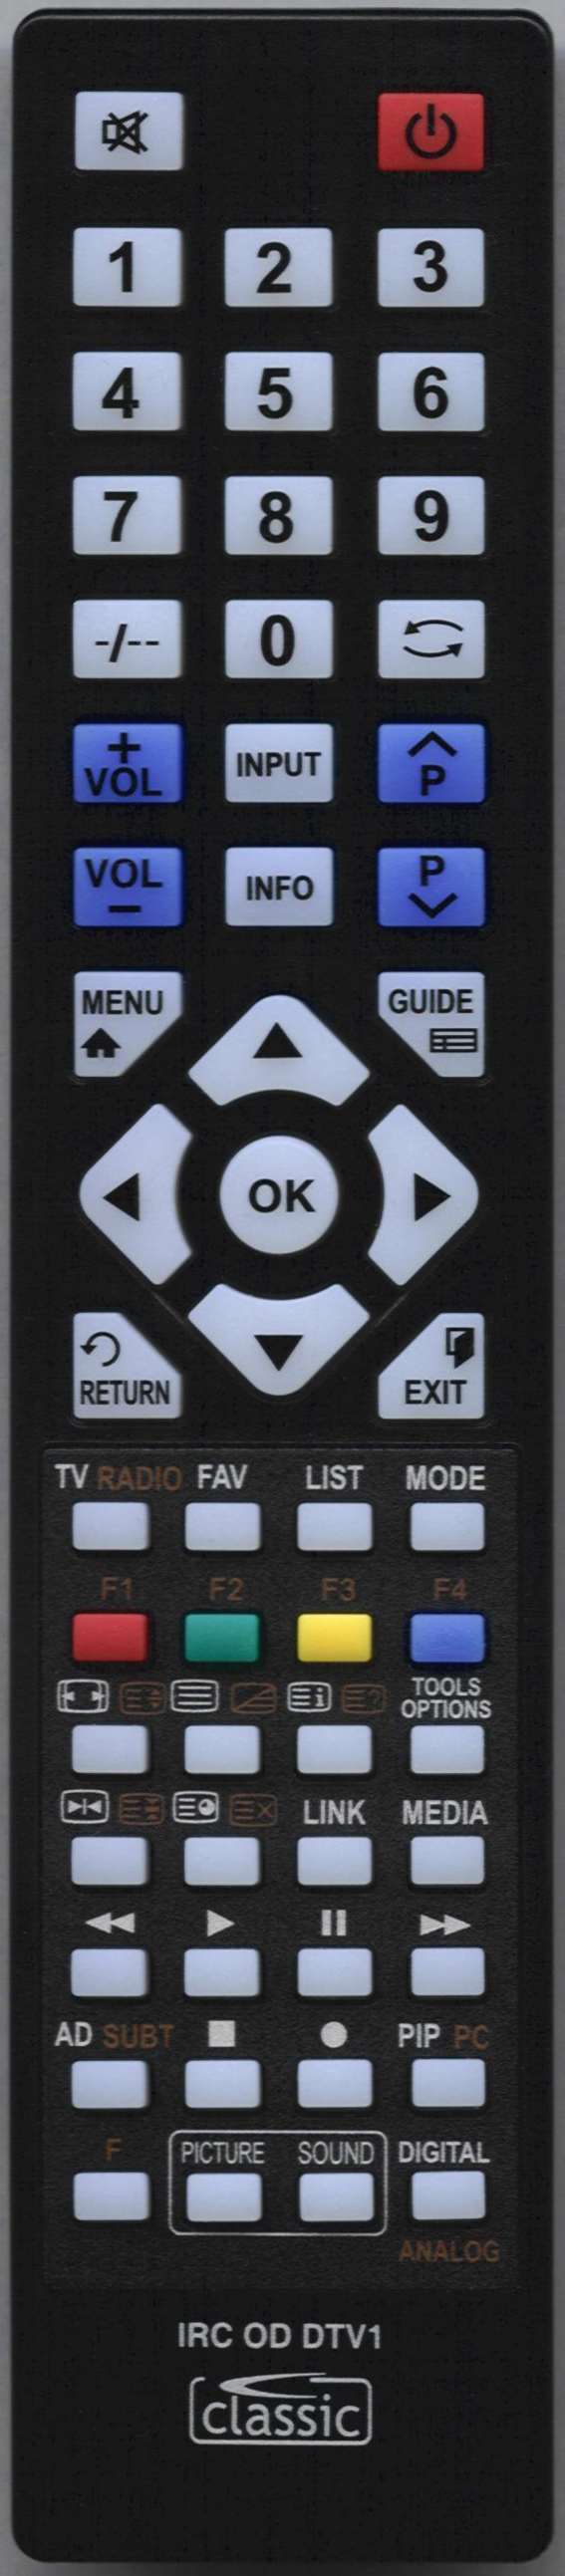 Beko 32 WLU530HID Remote Control